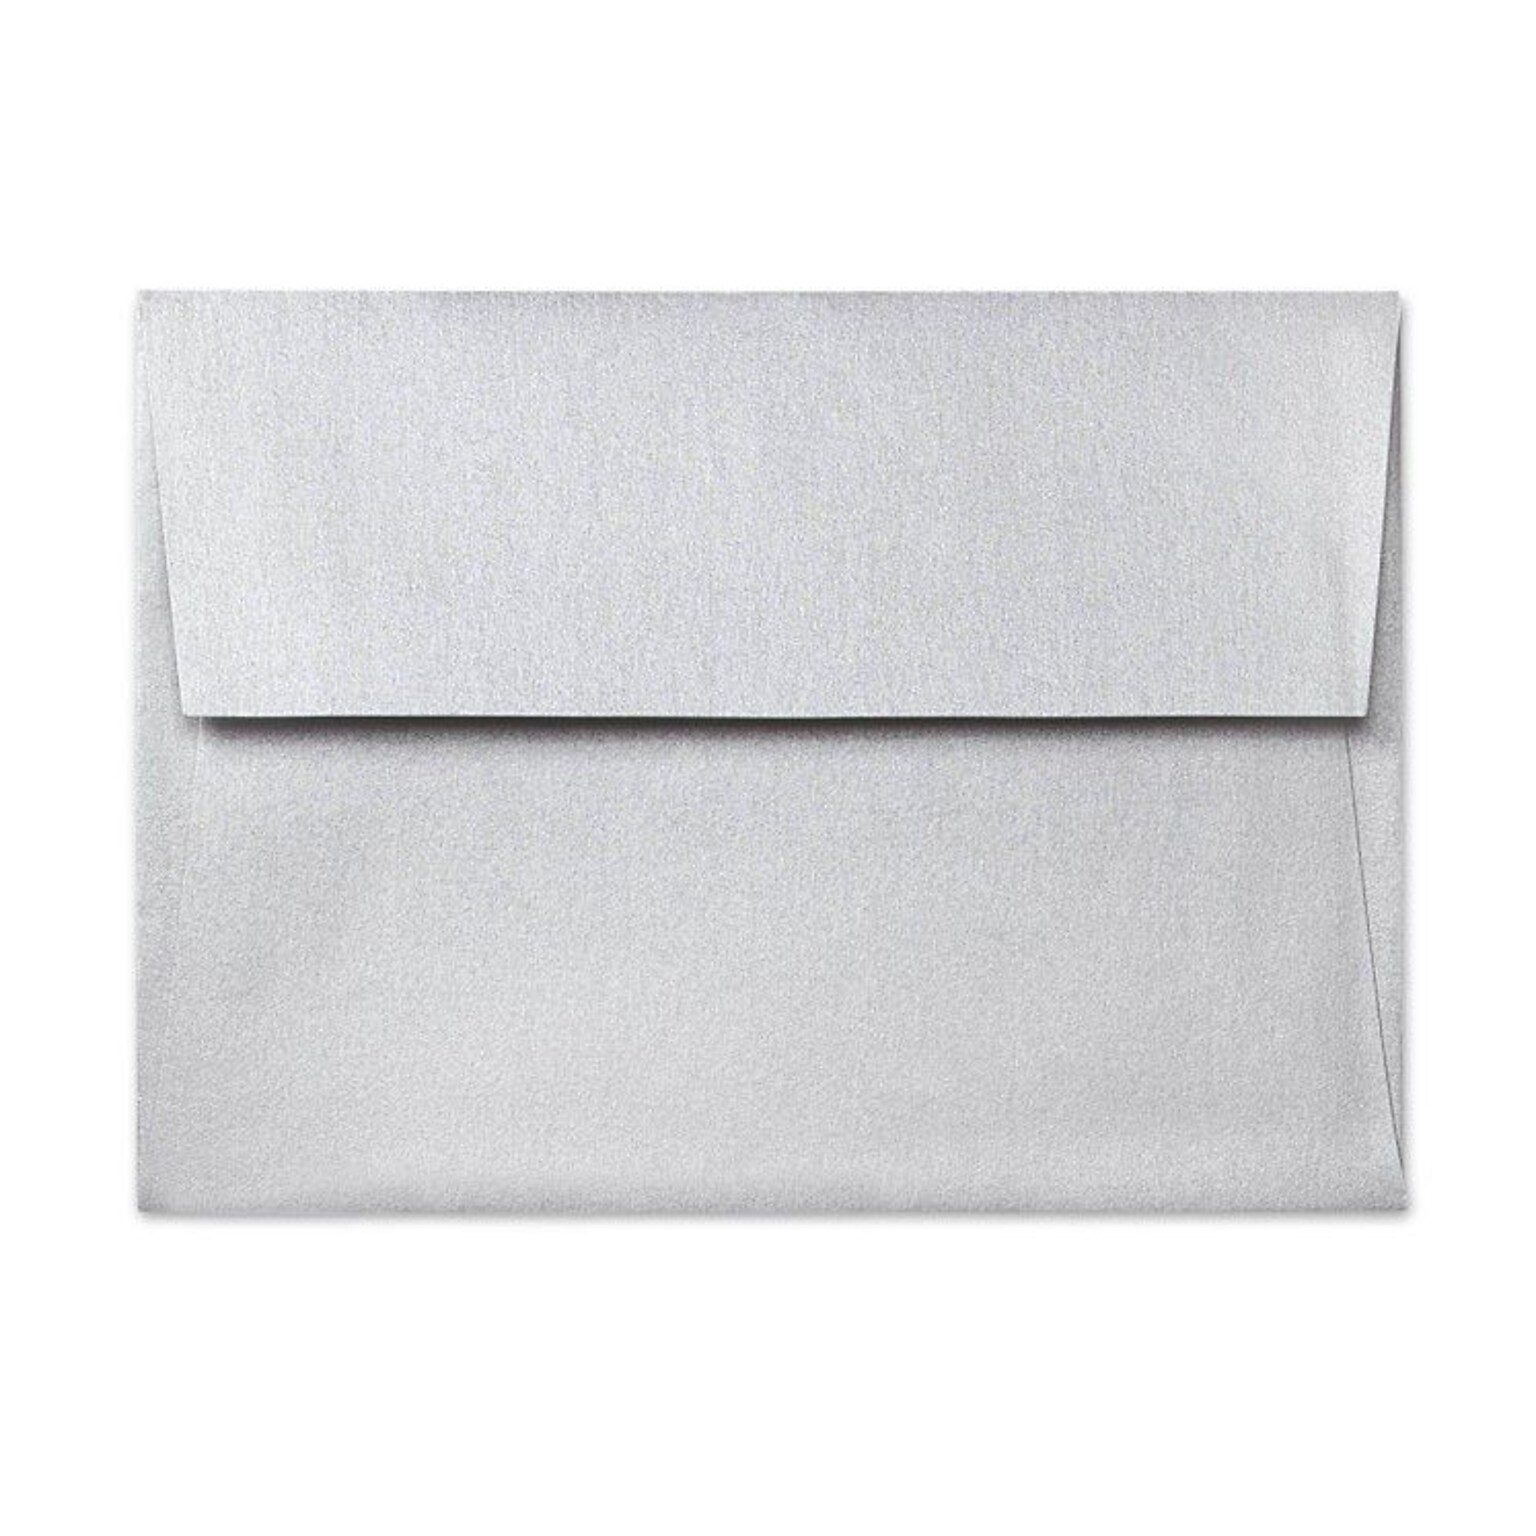 Lux® 5 3/4 x 8 3/4 80lbs. Square Flap Envelopes W/Peel & Press; Silver Metallic, 50/Pk